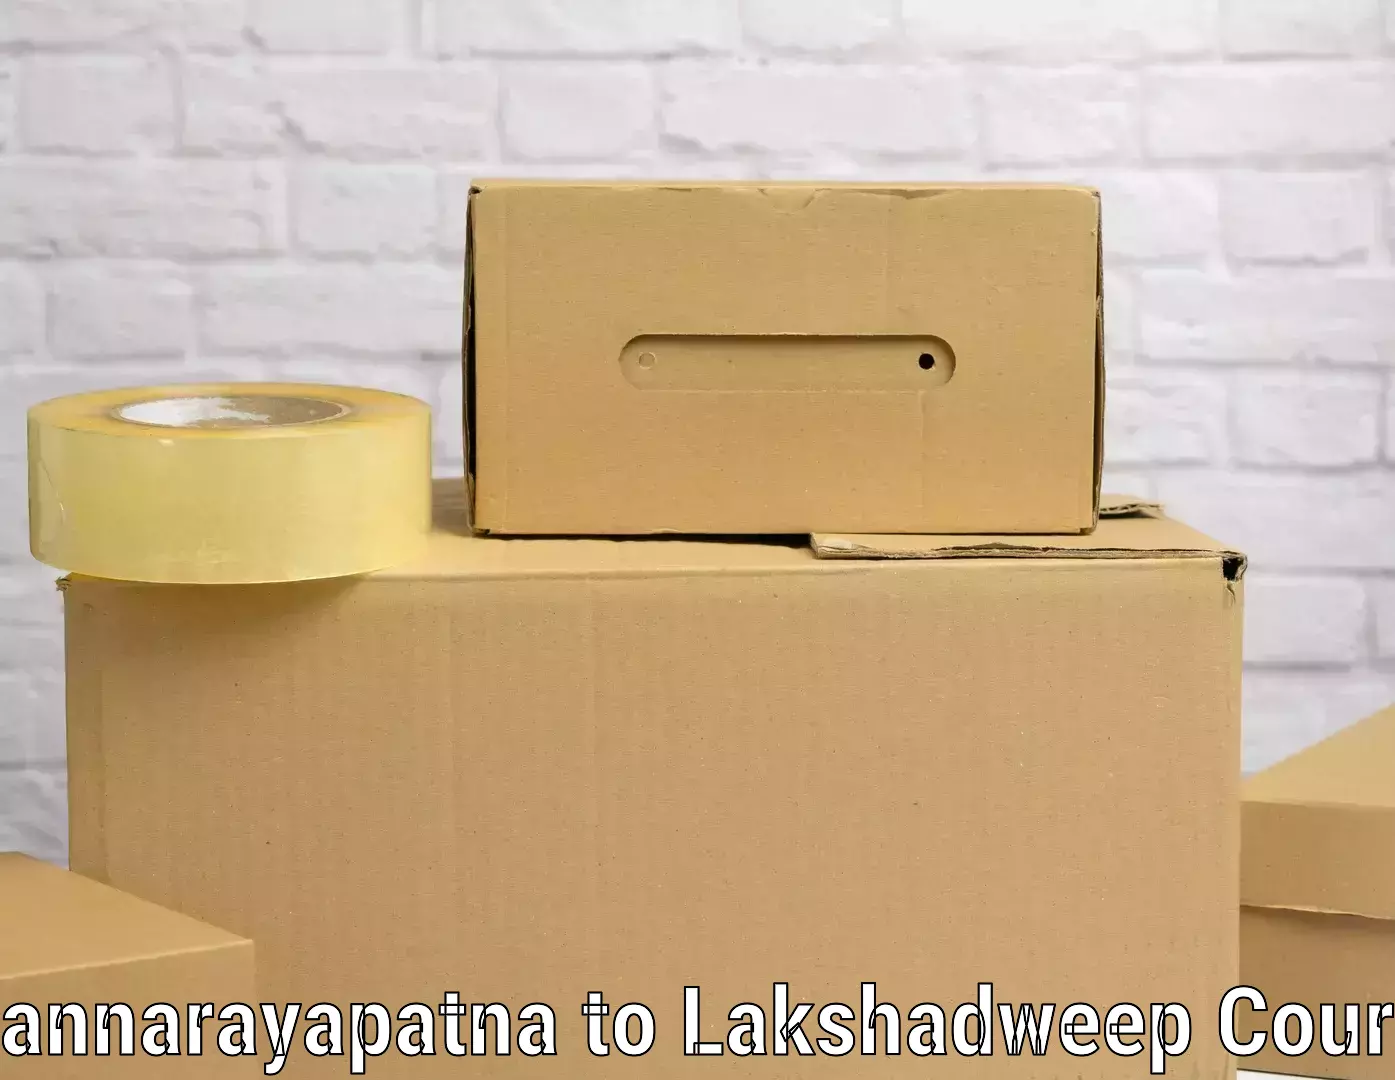 Luggage transfer service Channarayapatna to Lakshadweep